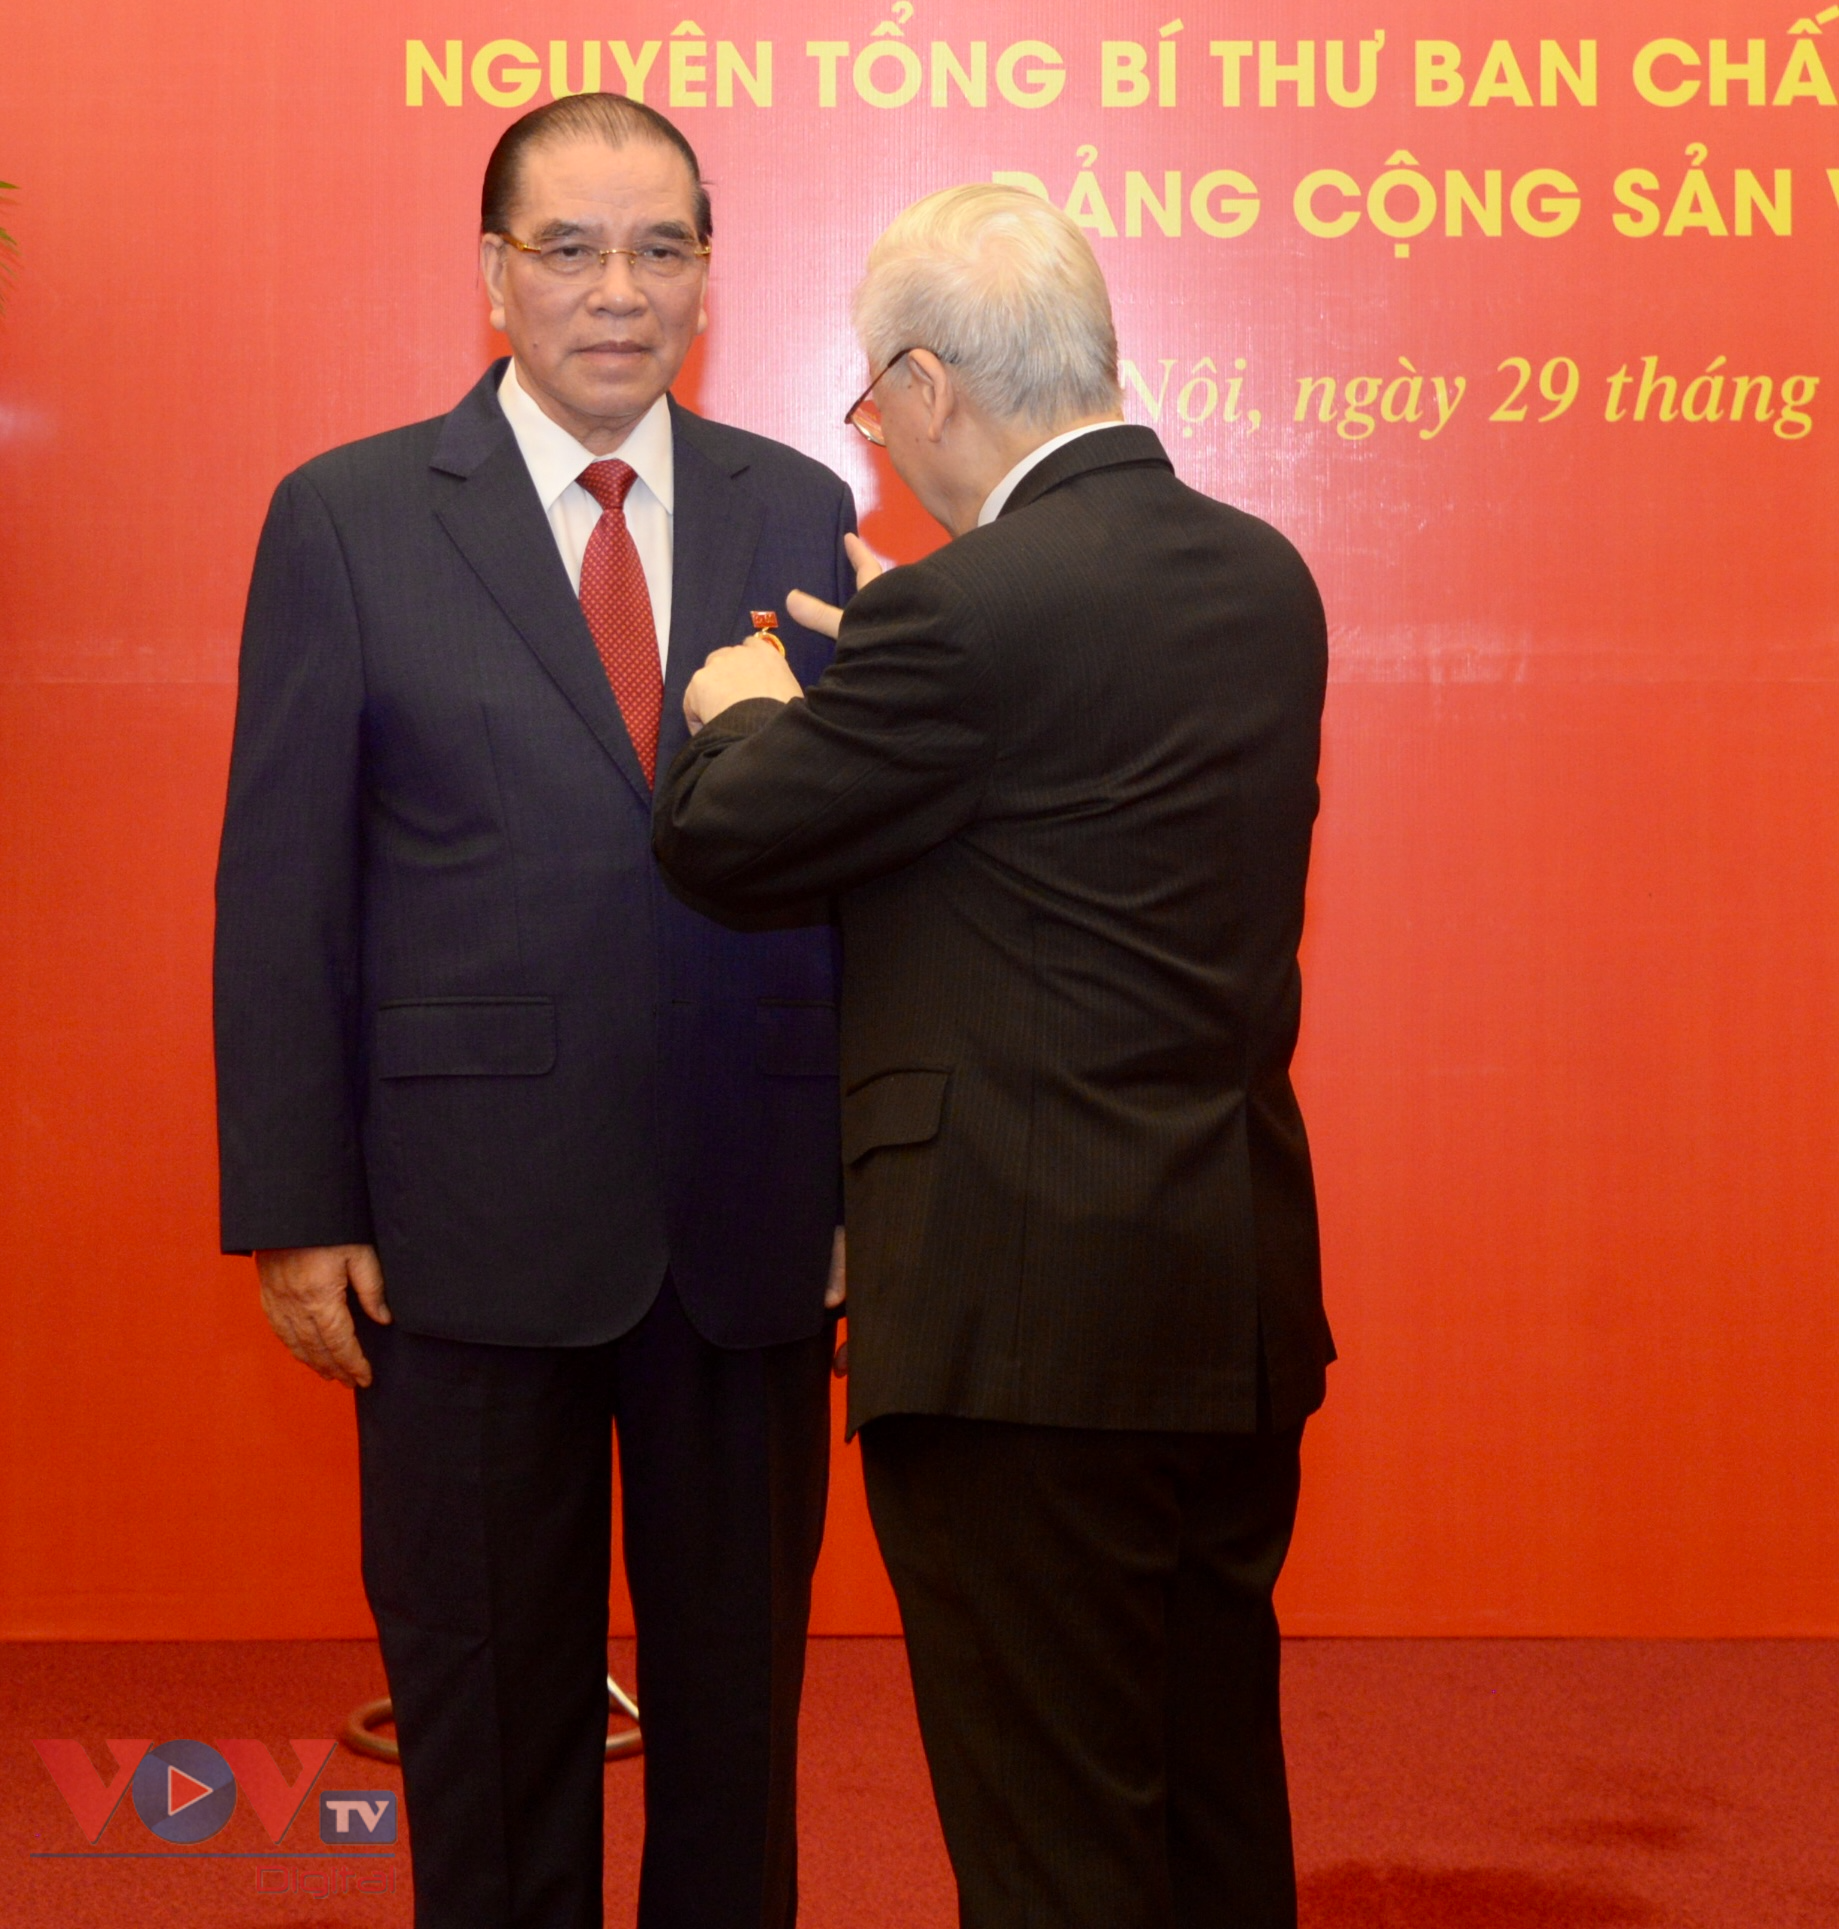 Tổng Bí thư Nguyễn Phú Trọng trao huy hiệu 60 năm tuổi Đảng tặng Nguyên Tổng Bí thư Nông Đức Mạnh - Ảnh 1.